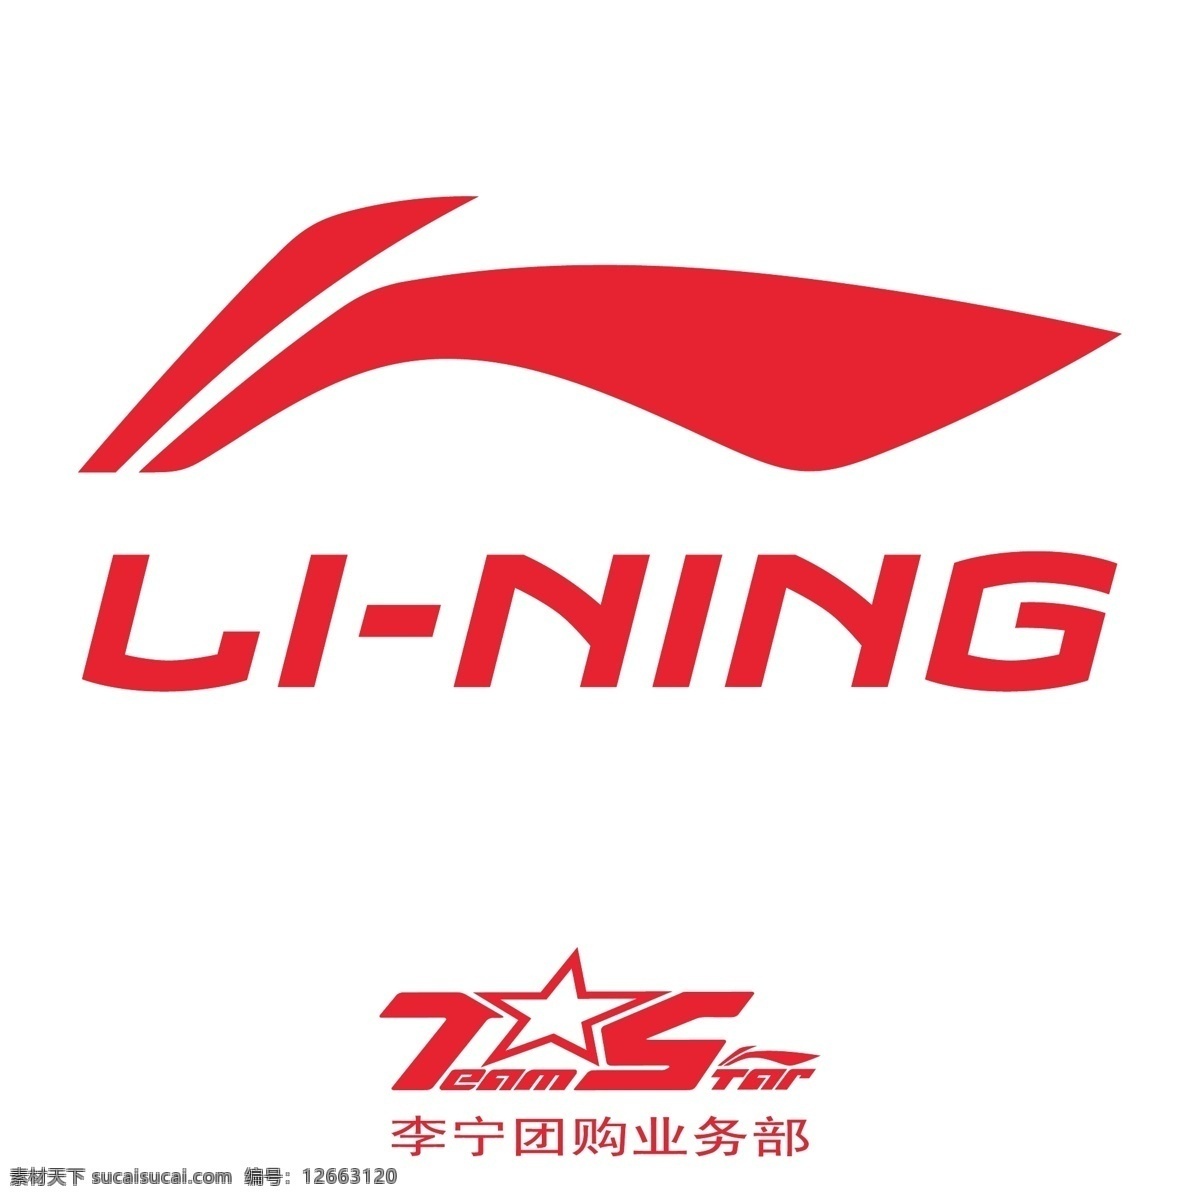 李宁logo 李宁 li ning 团购业务部 鞋 lining logo集合 标志图标 企业 logo 标志